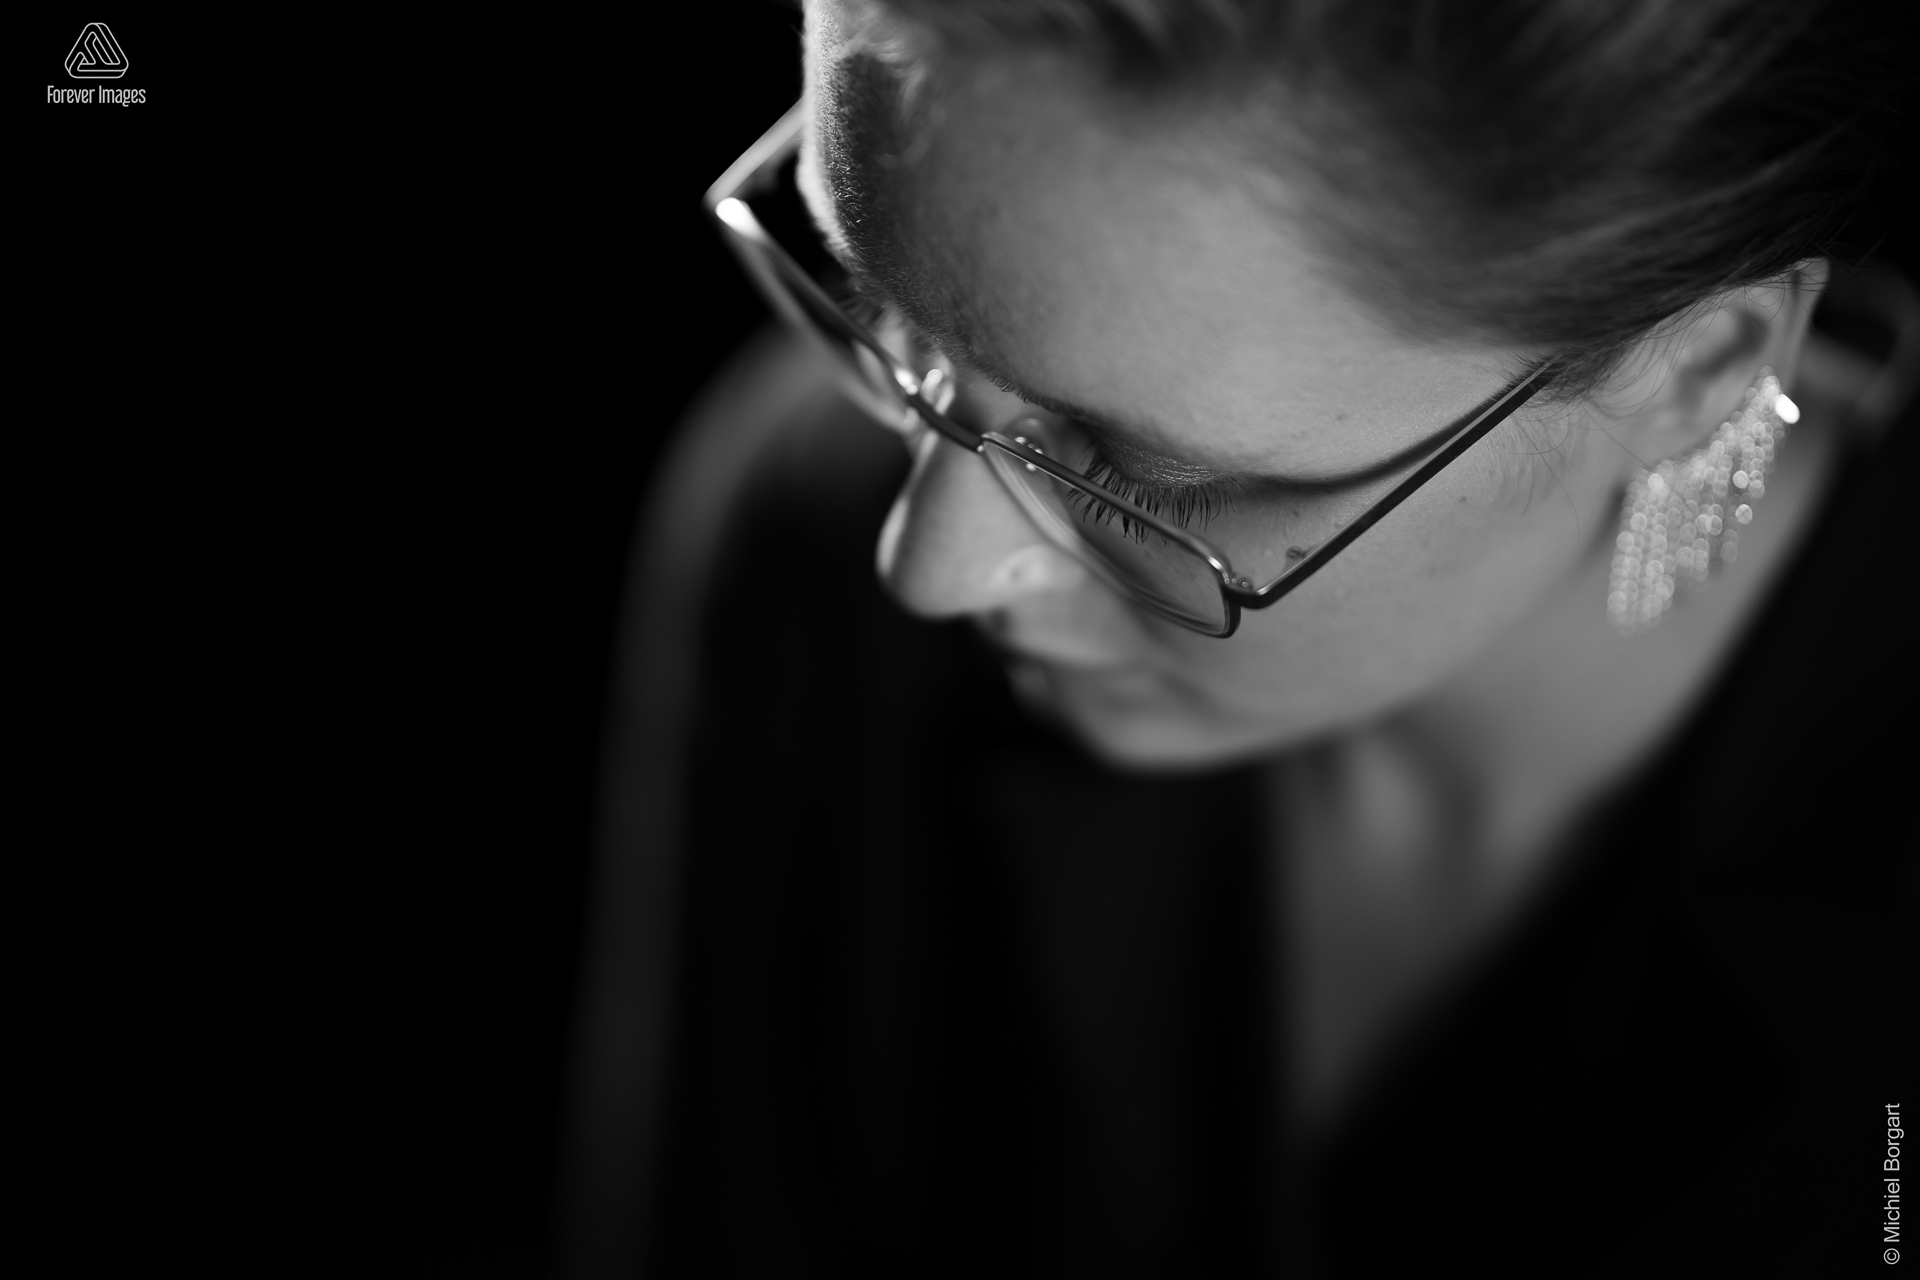 Portretfoto zwart-wit jonge dame close-up van boven met bril en oorbellen | Carmen | Portretfotograaf Michiel Borgart - Forever Images.